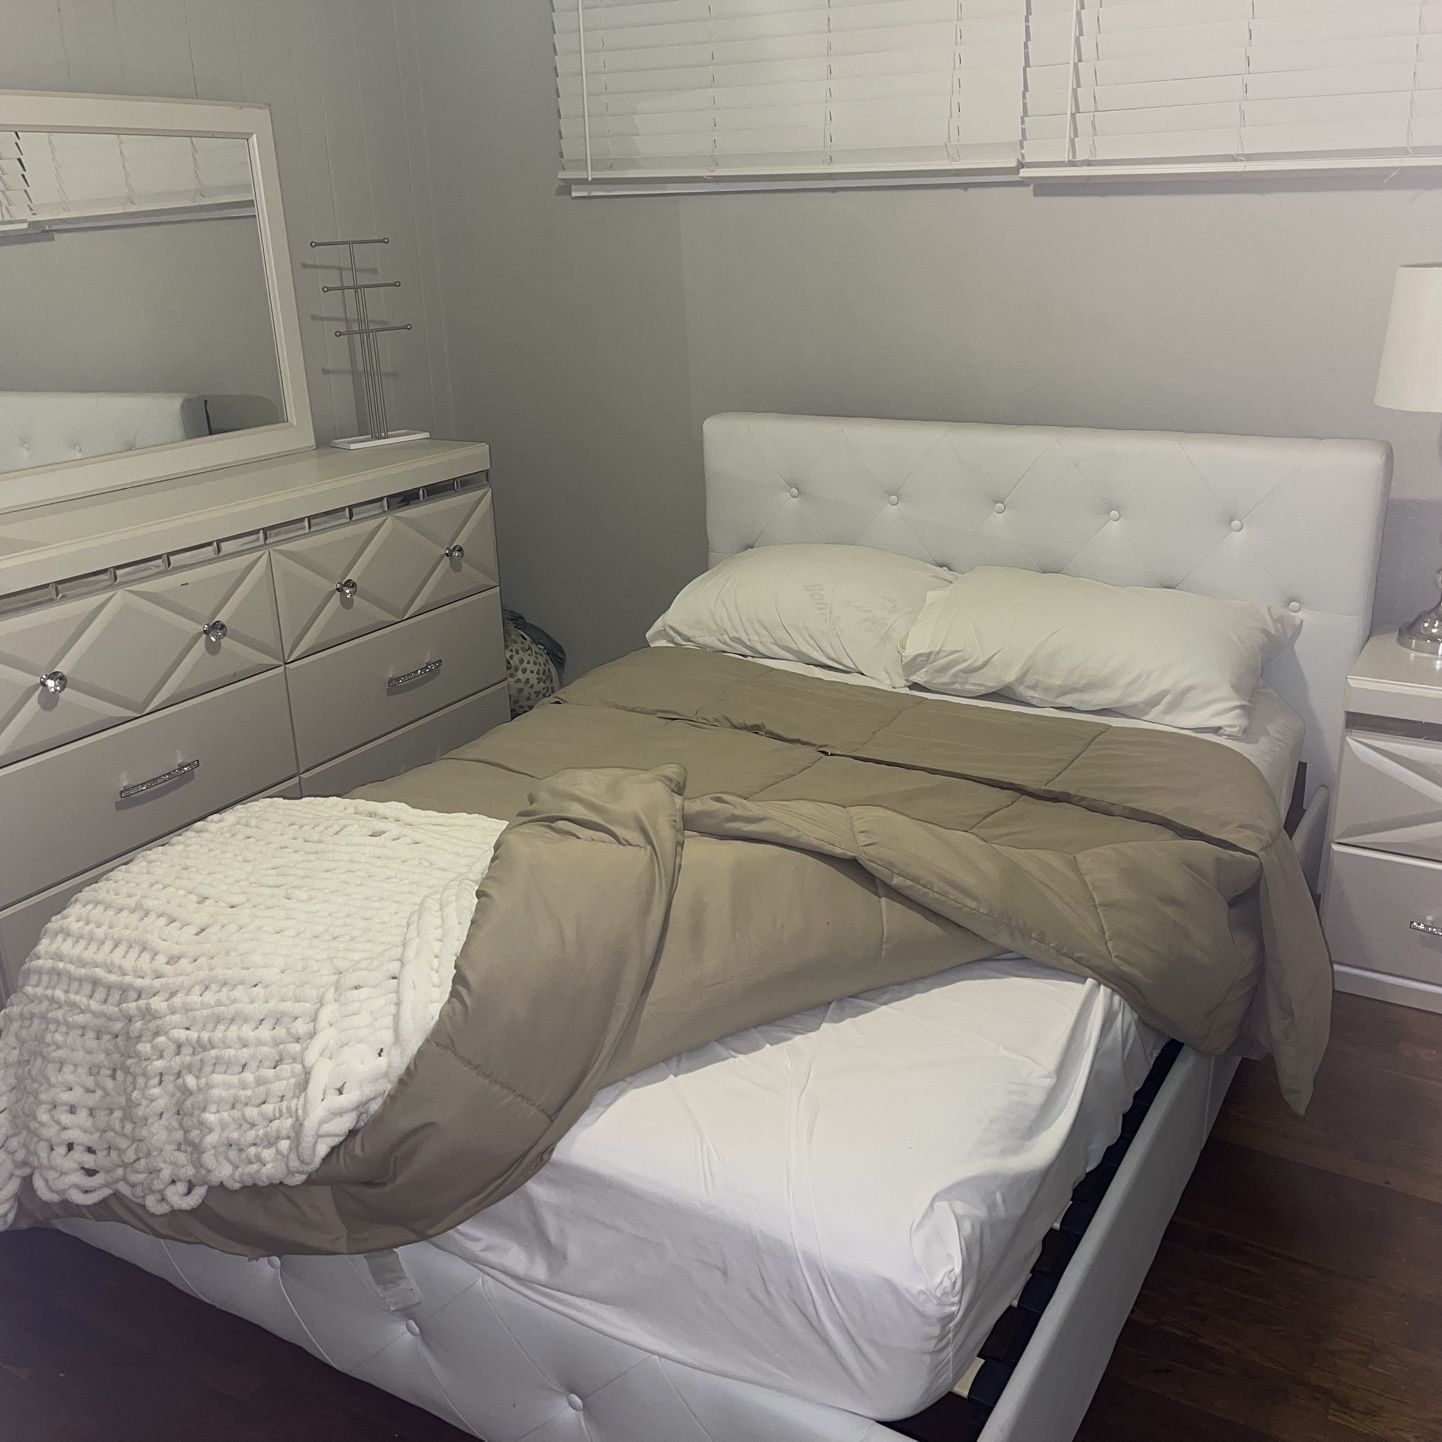 Full Size Bedroom Set 